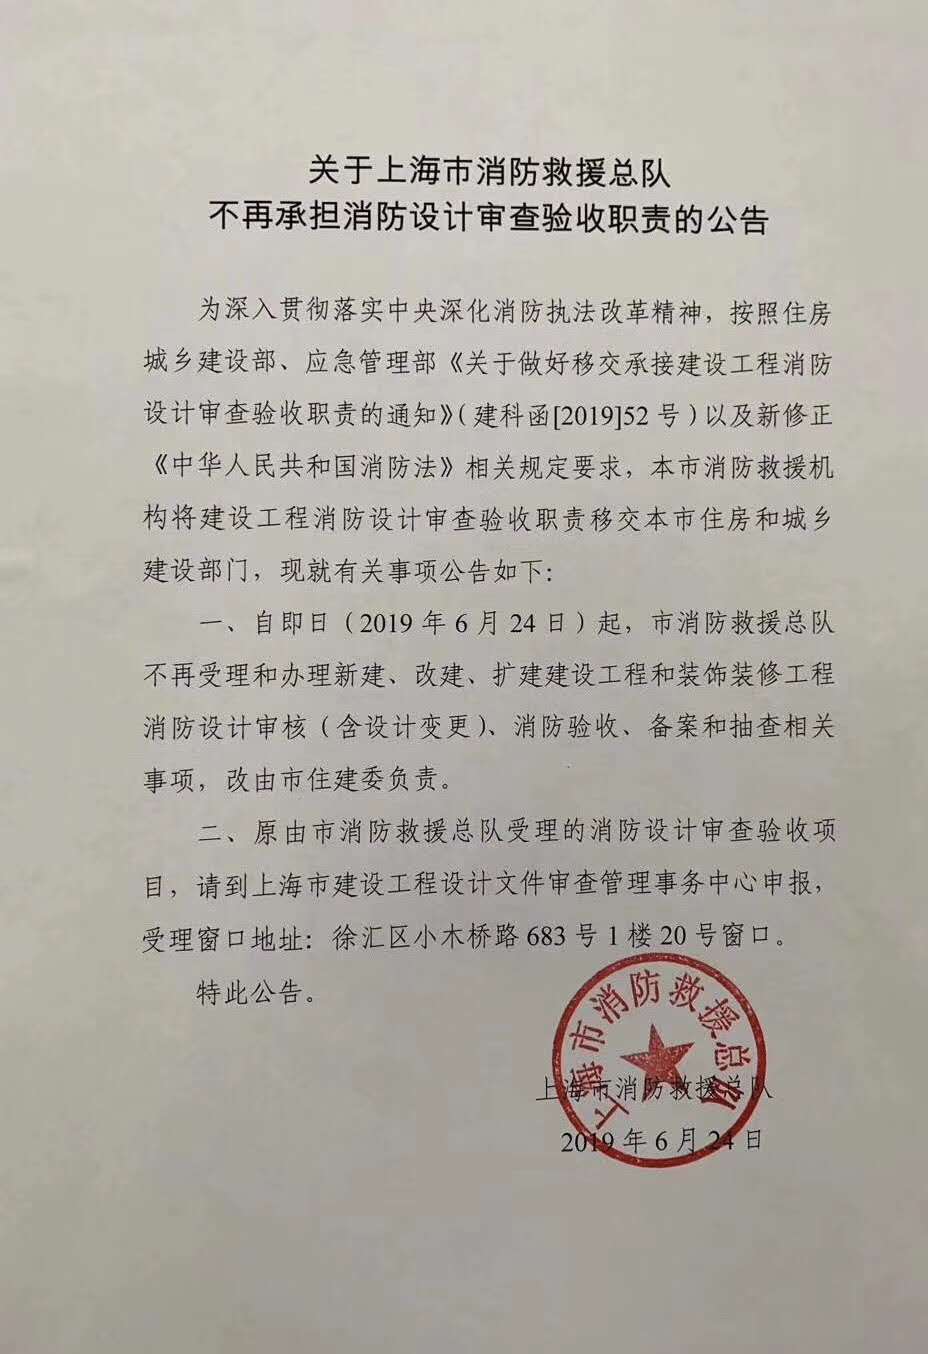 关于上海市消防救援总队不再承担消防设计审查验收职责的公告